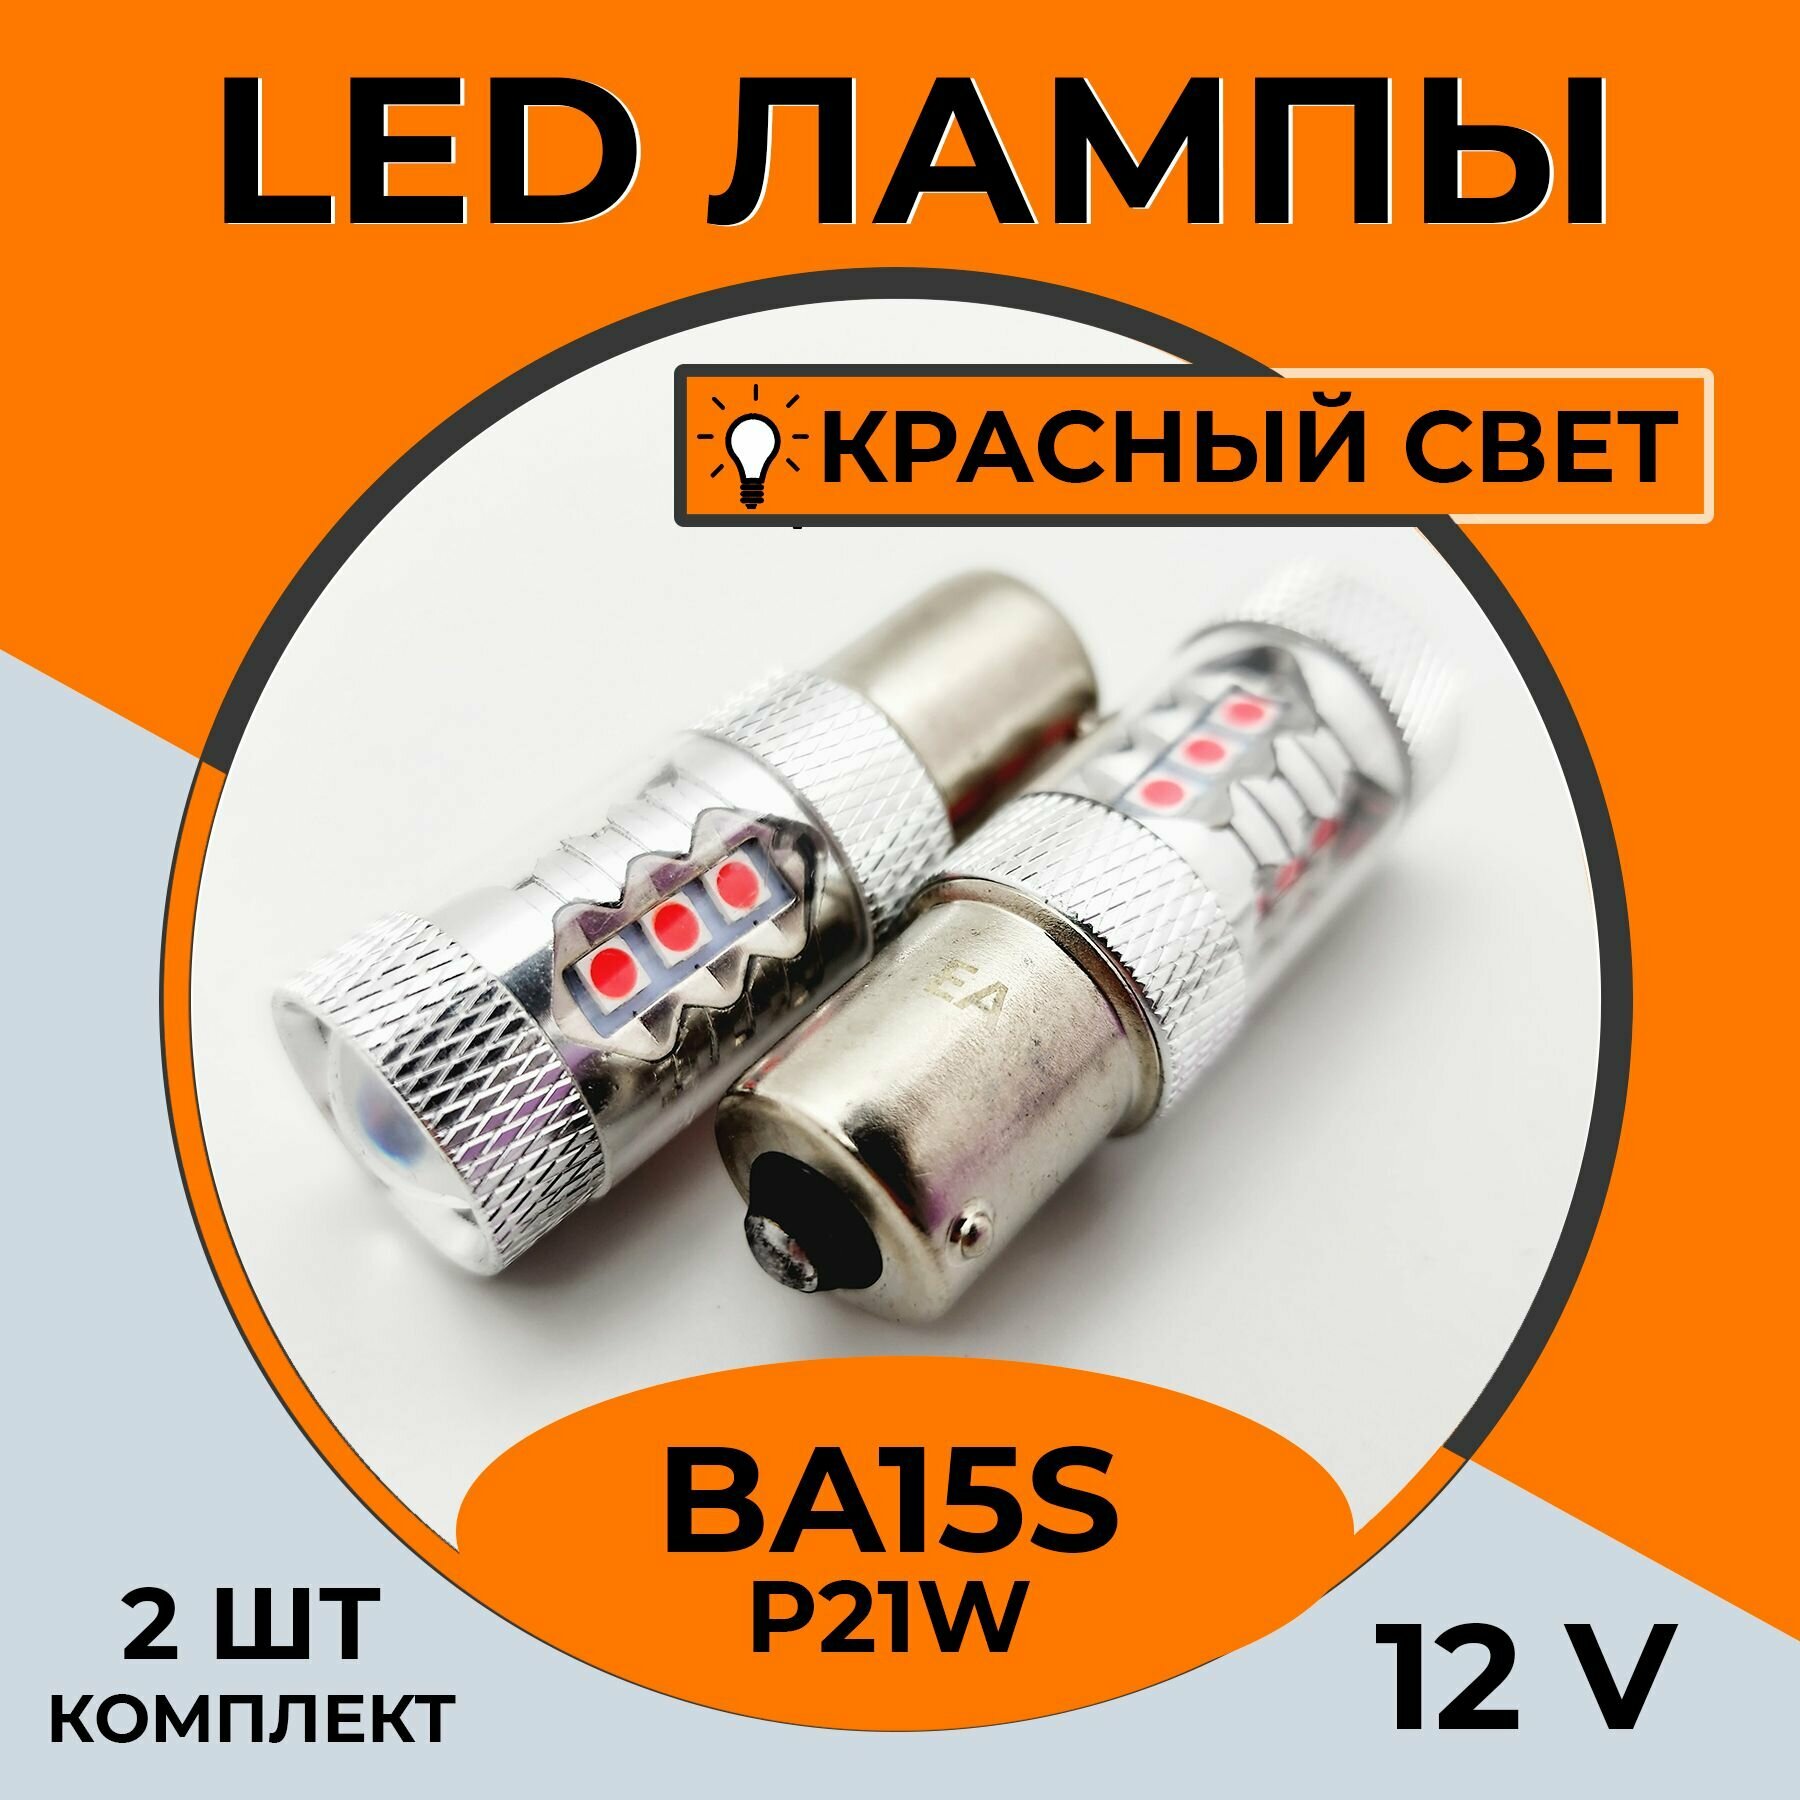 Автомобильная светодиодная LED лампа BA15s P21W для габаритных огней, стоп-сигнала, 12в красный свет, 2 шт